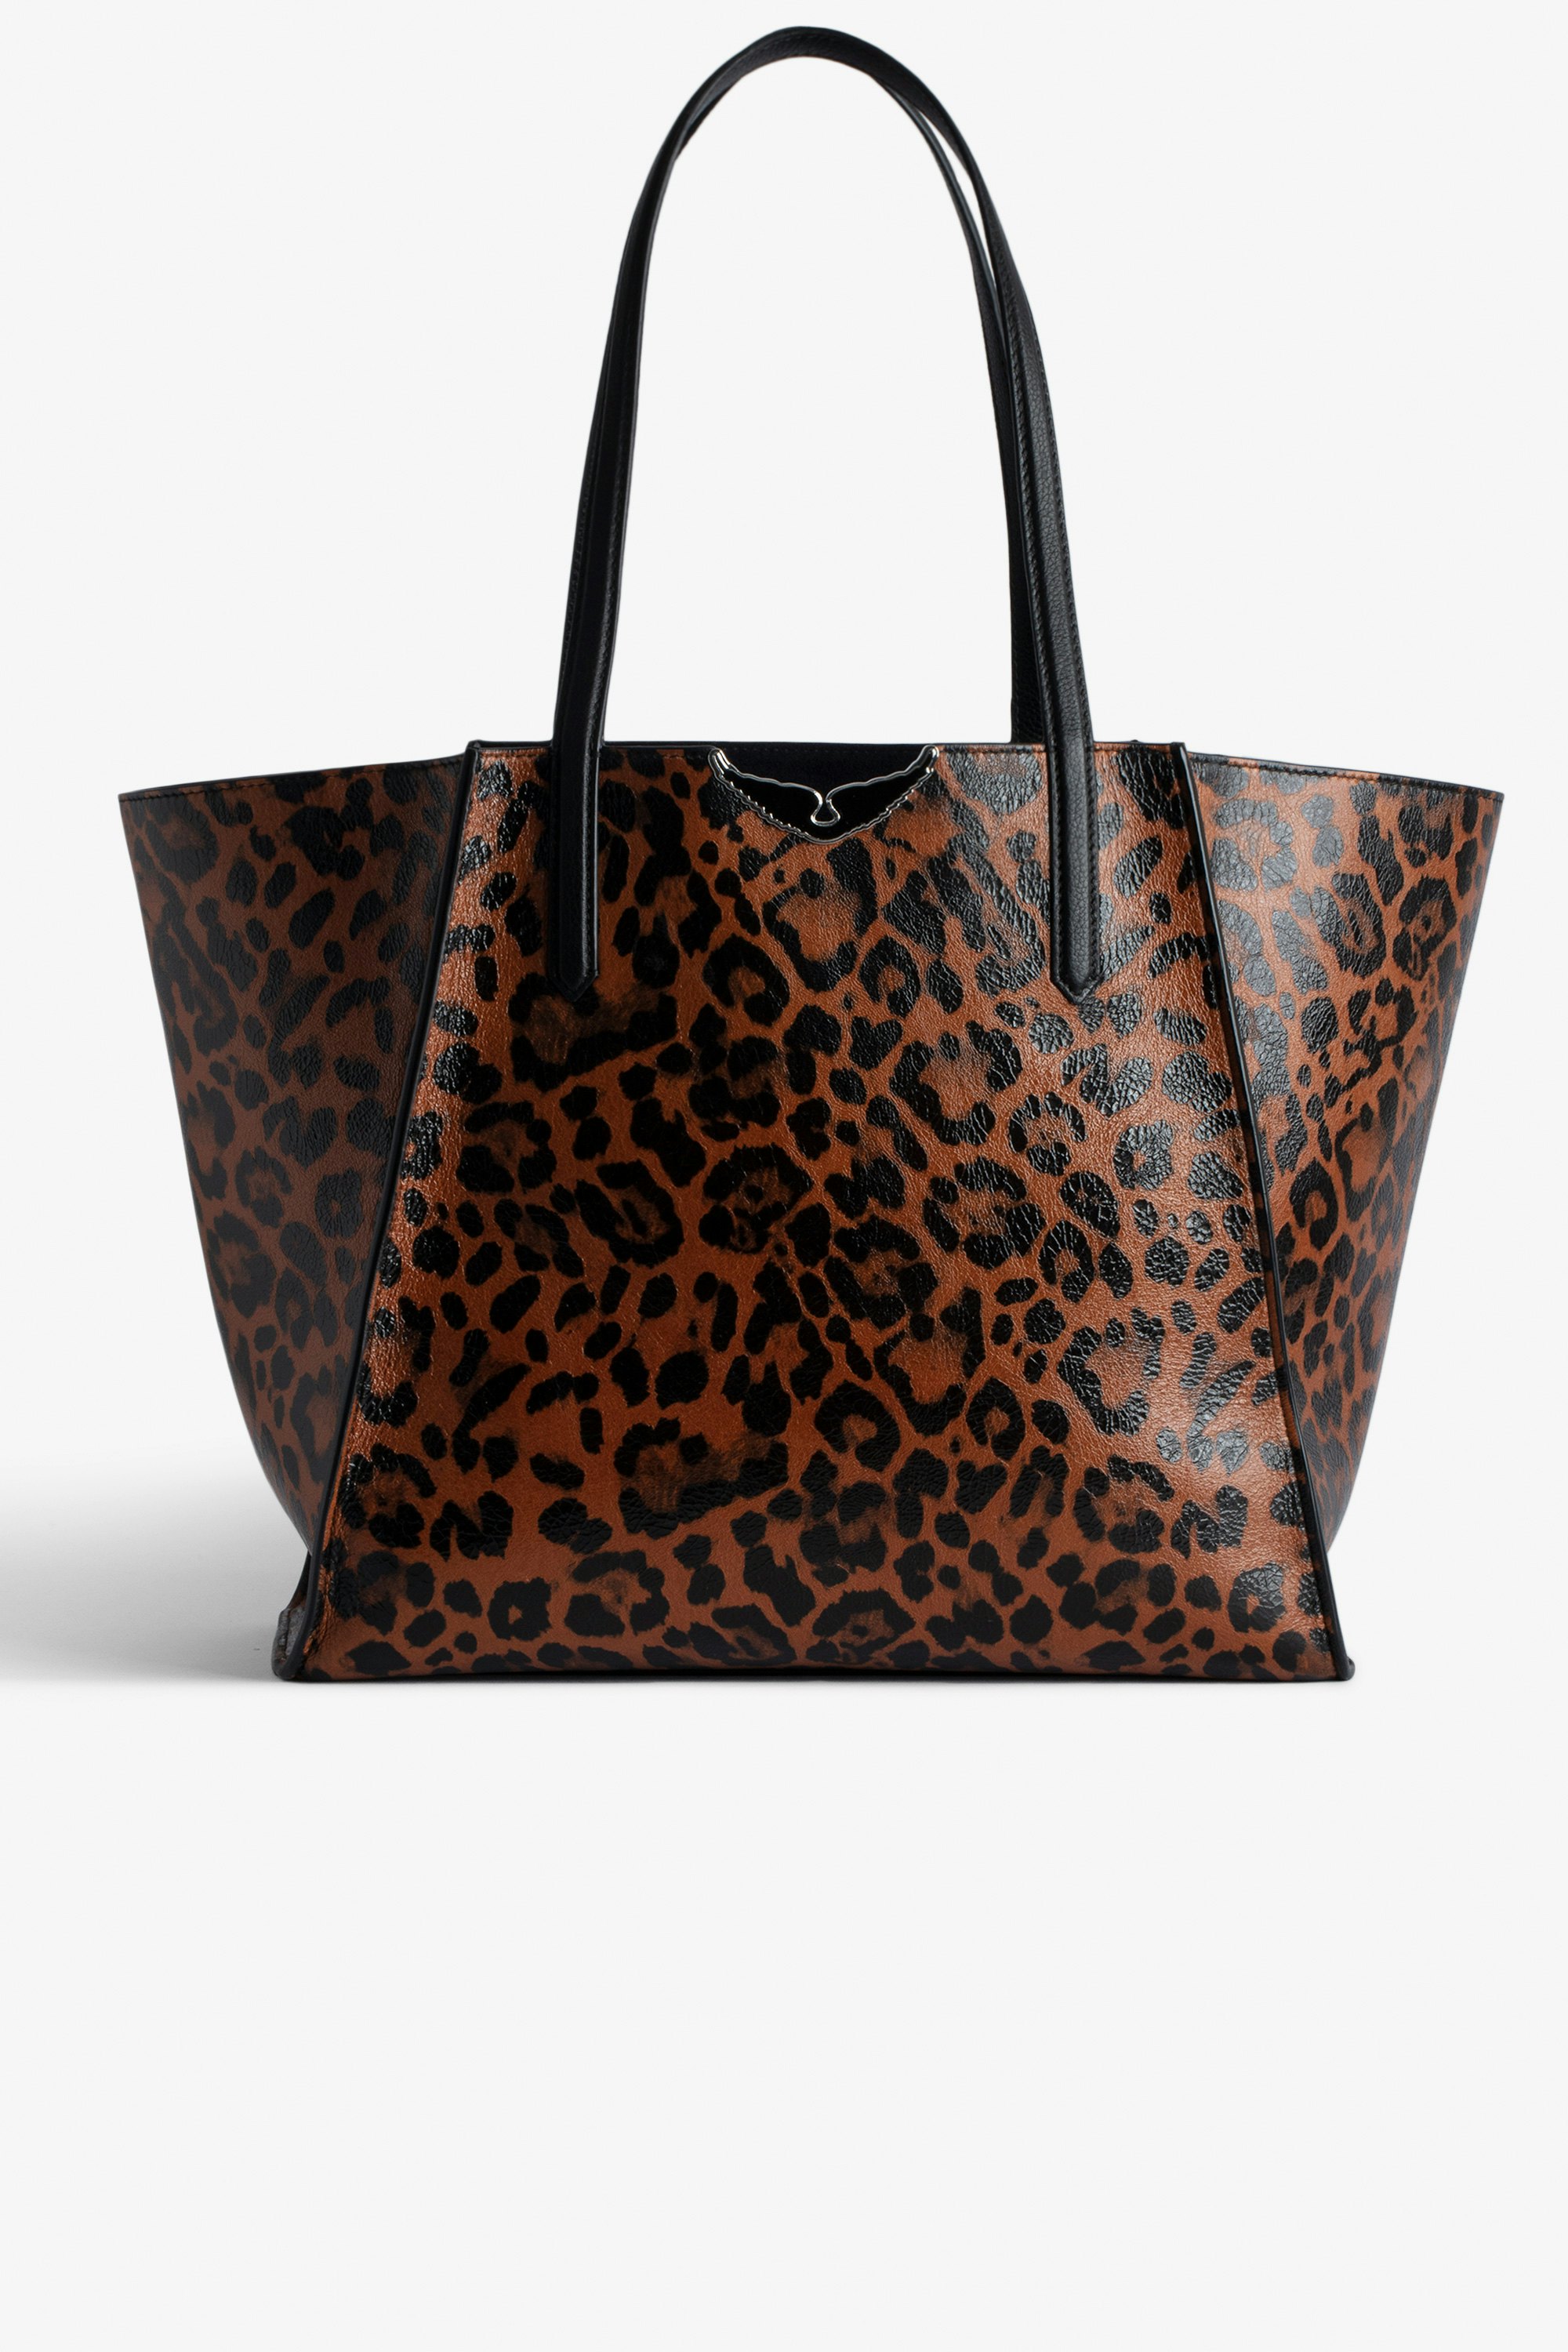 Borsa Le Borderline leopardata Borsa cabas reversibile in pelle lucida marrone stampa leopardata con manico e ali in metallo da donna.